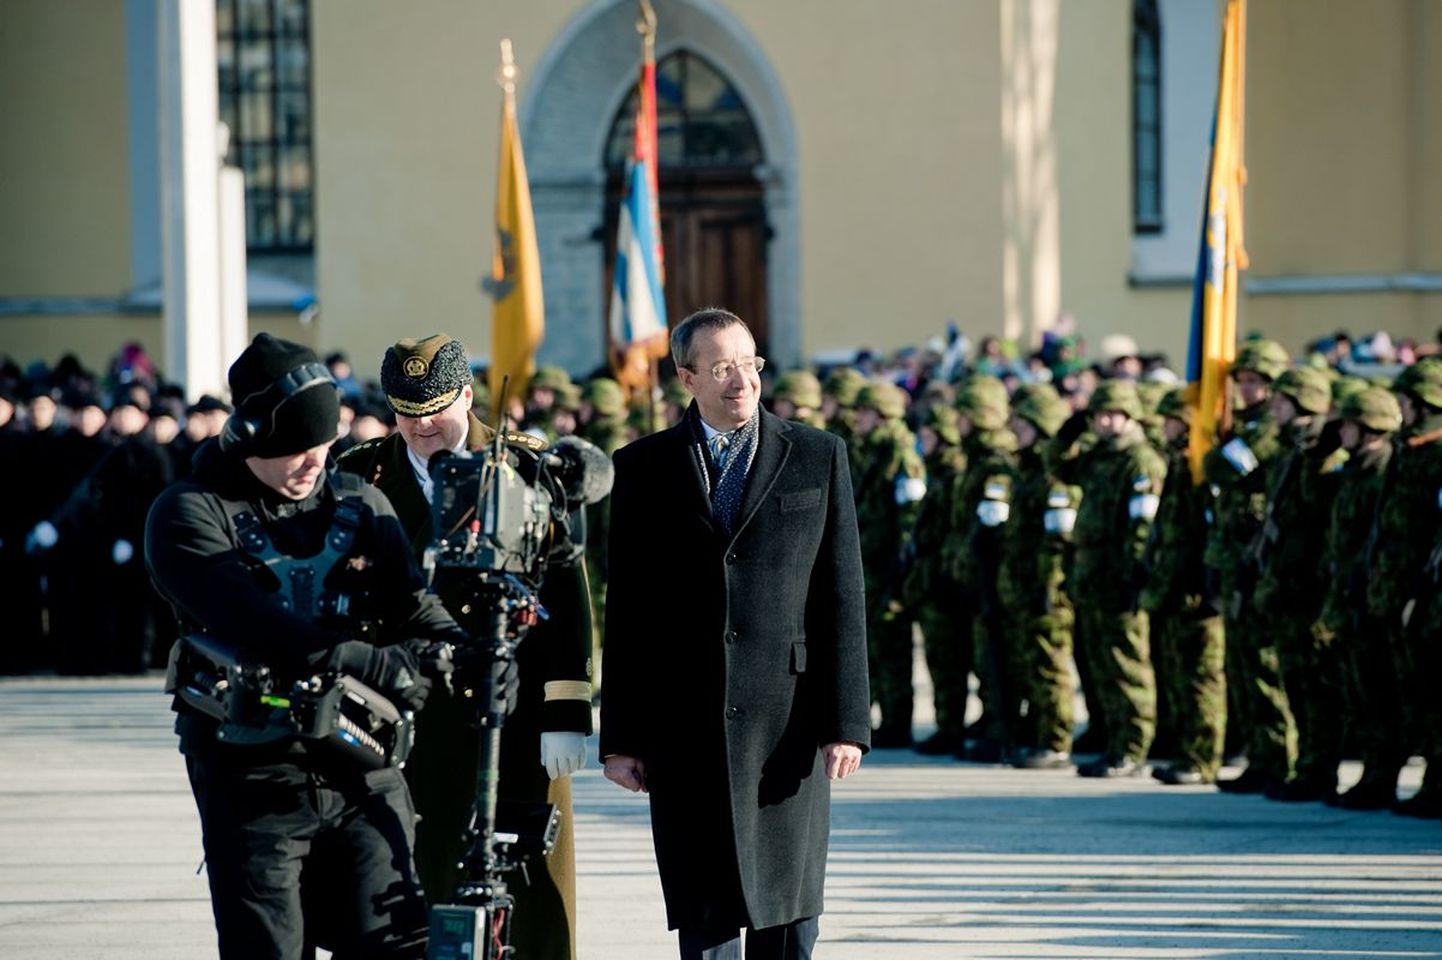 Vabariigi 95. aastapäeva paraad Vabaduse väljakul
Toomas Hendrik Ilves